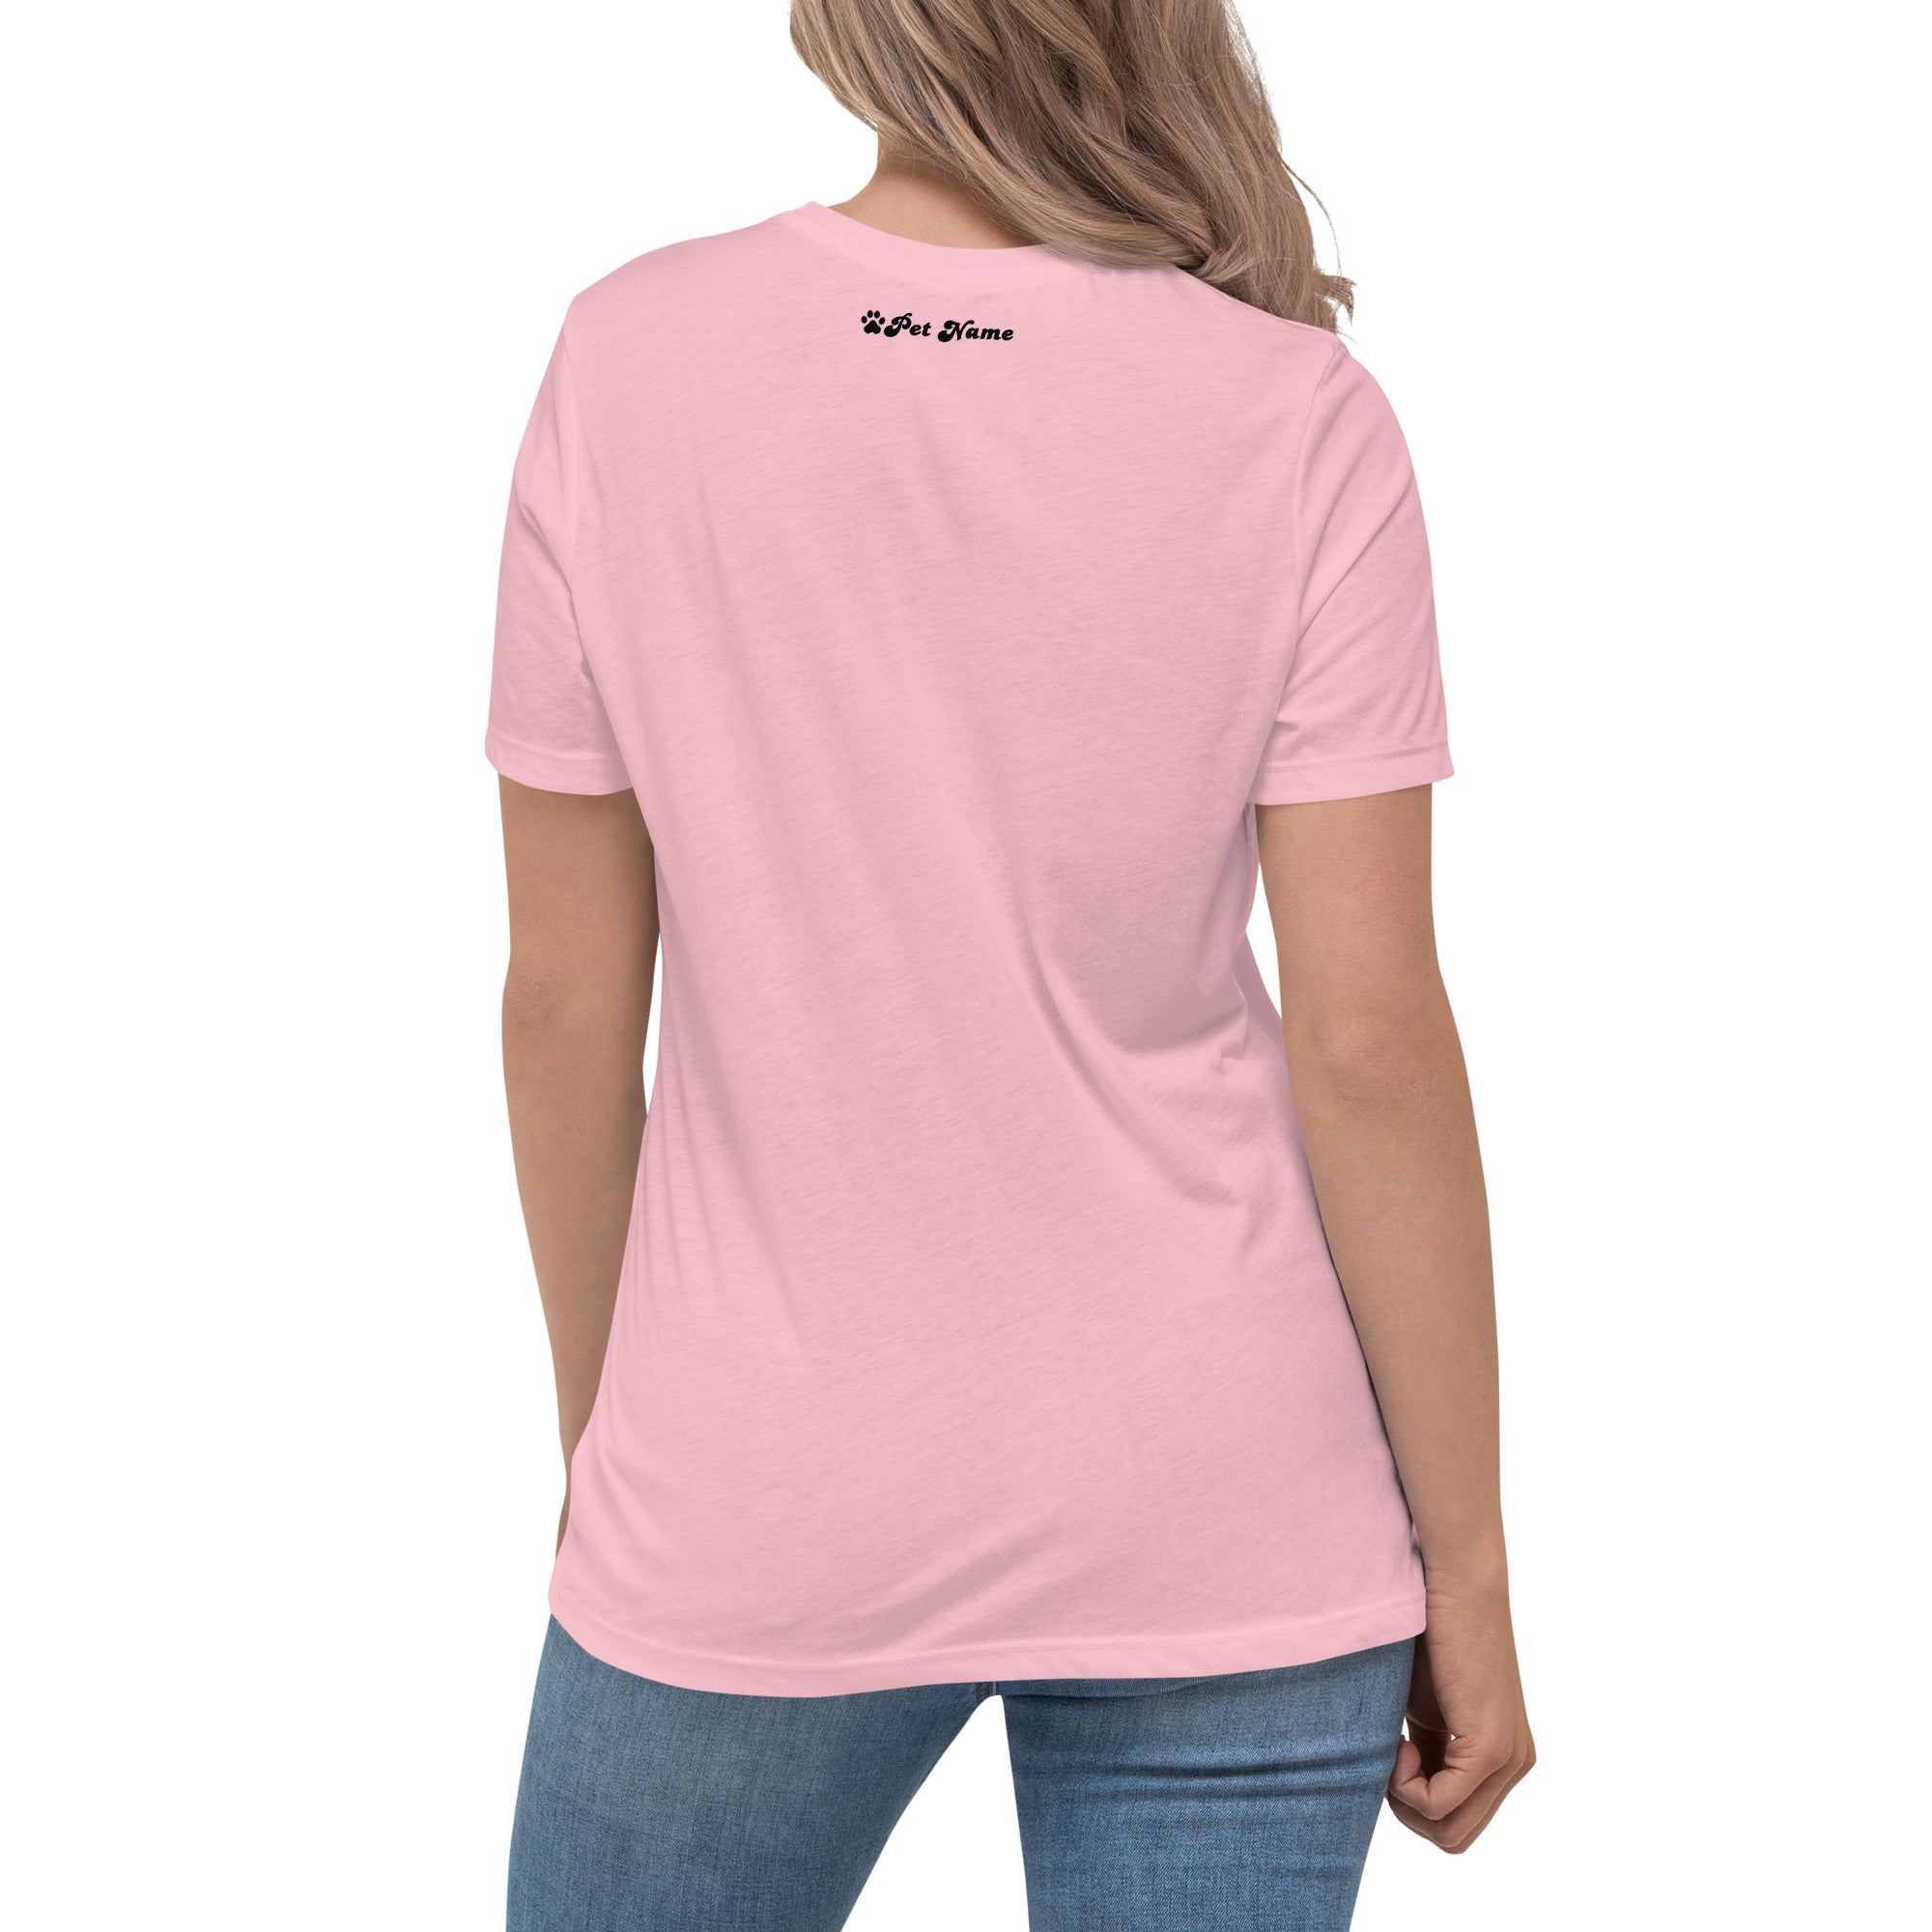 Chihuahua Women's Relaxed T-Shirt